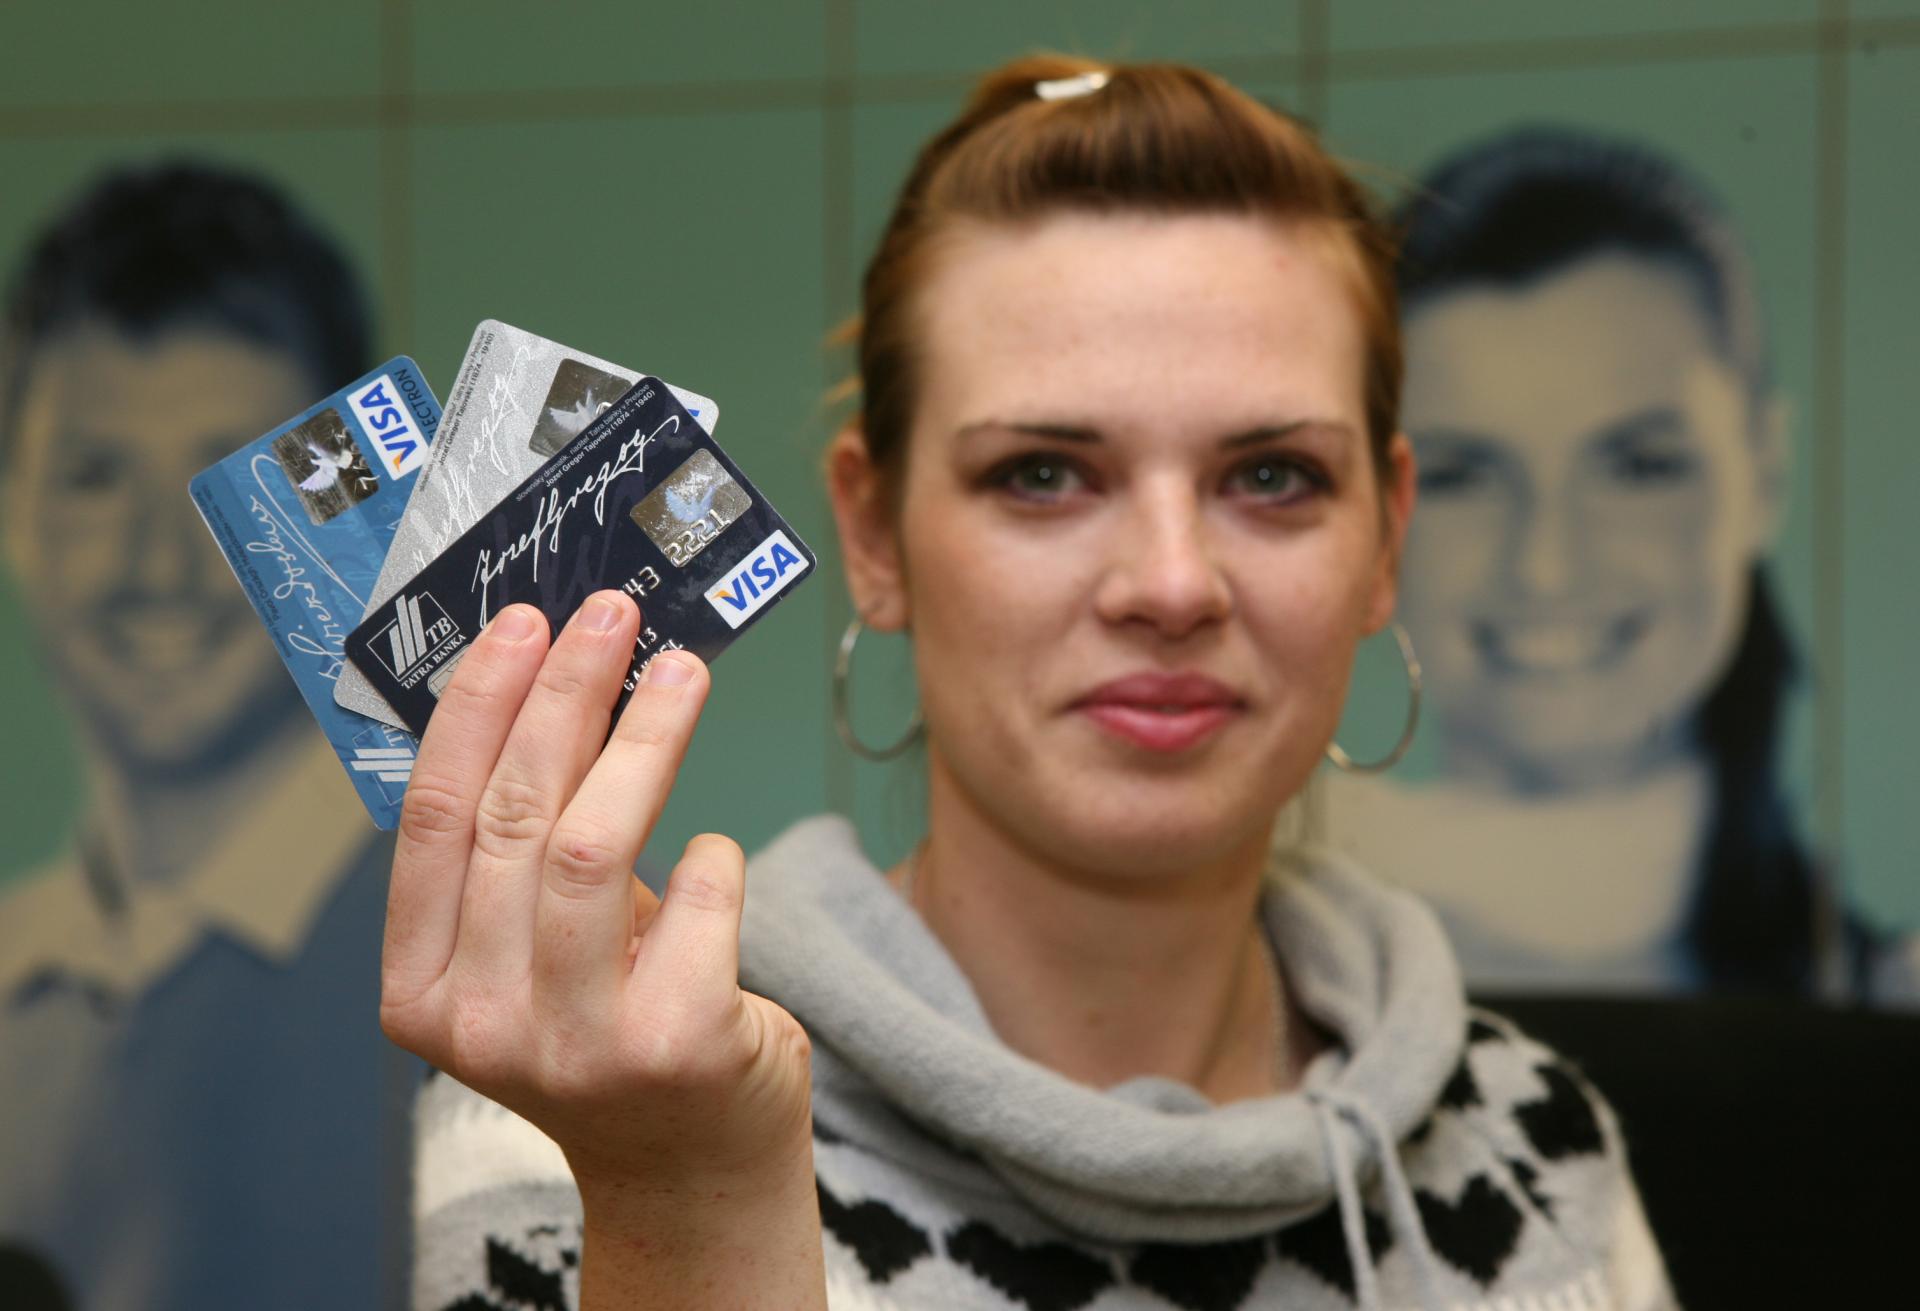 Slováci platia viac kartou ako v hotovosti, každý rokom sa priepasť rozdielu prehlbuje